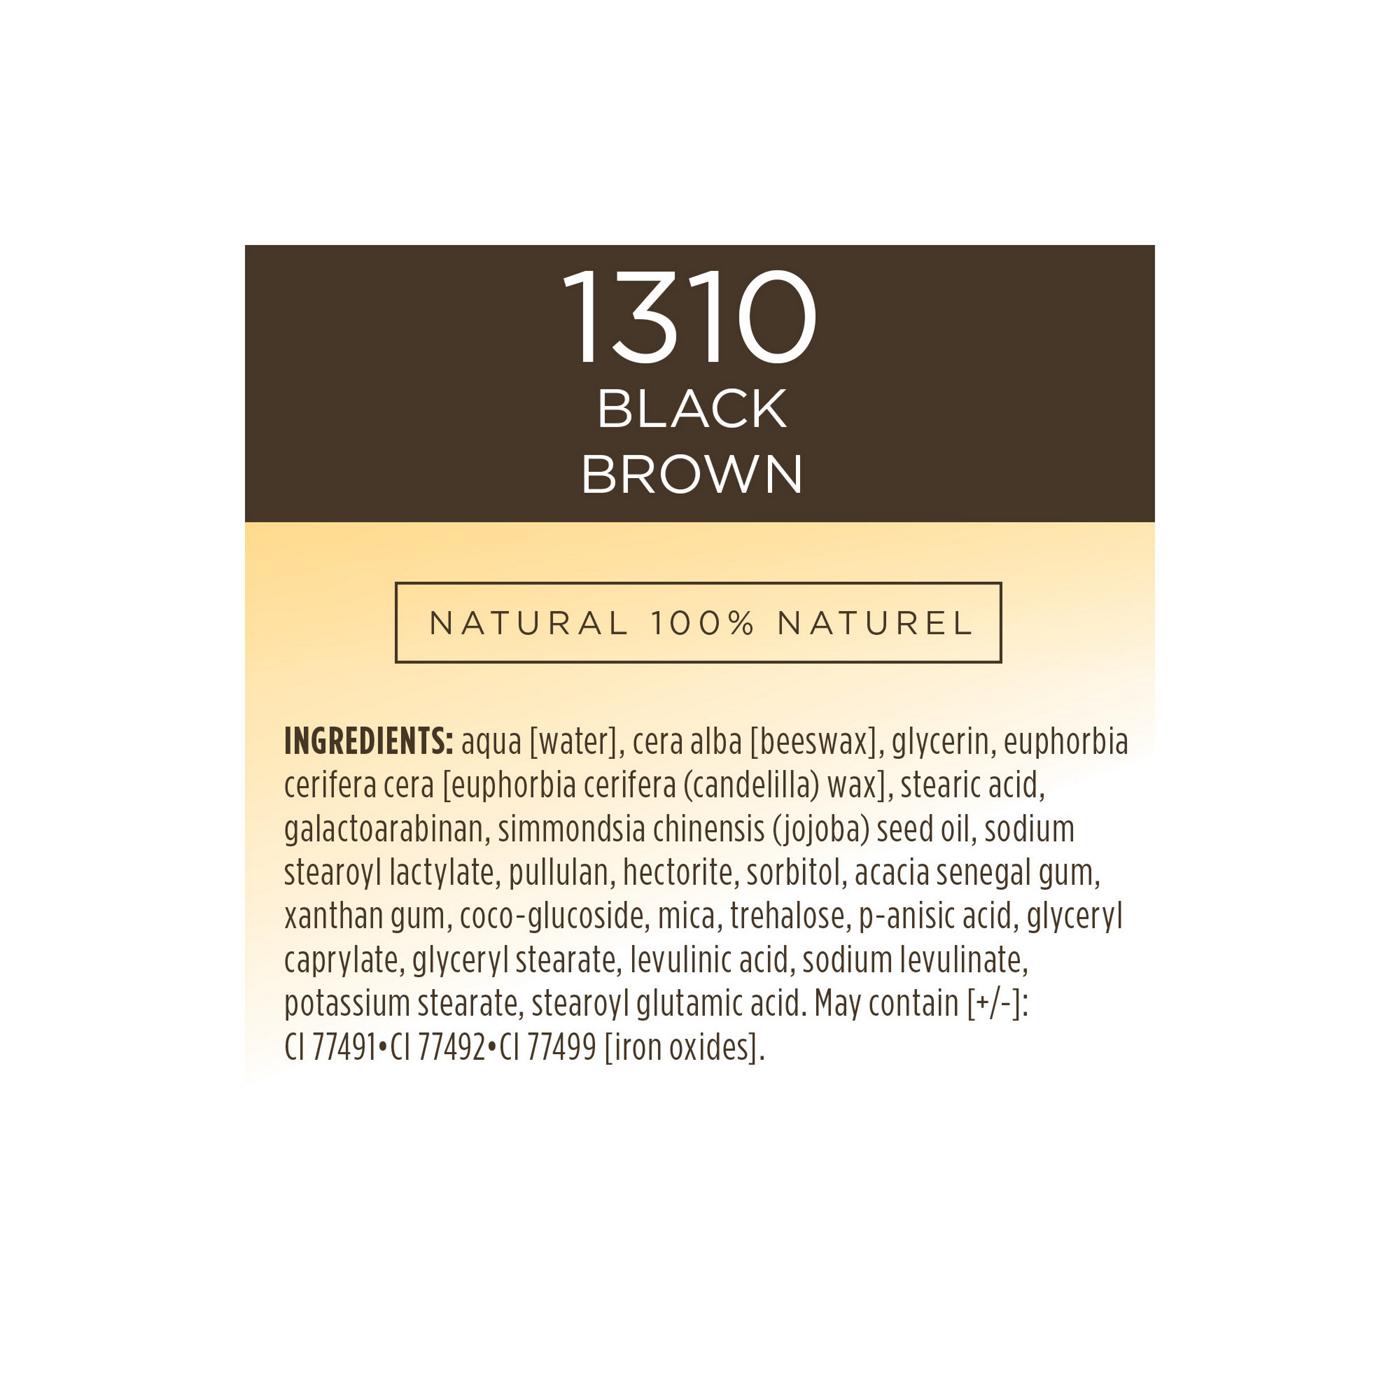 Burt's Bees Nourishing Mascara Black Brown 1310; image 3 of 8